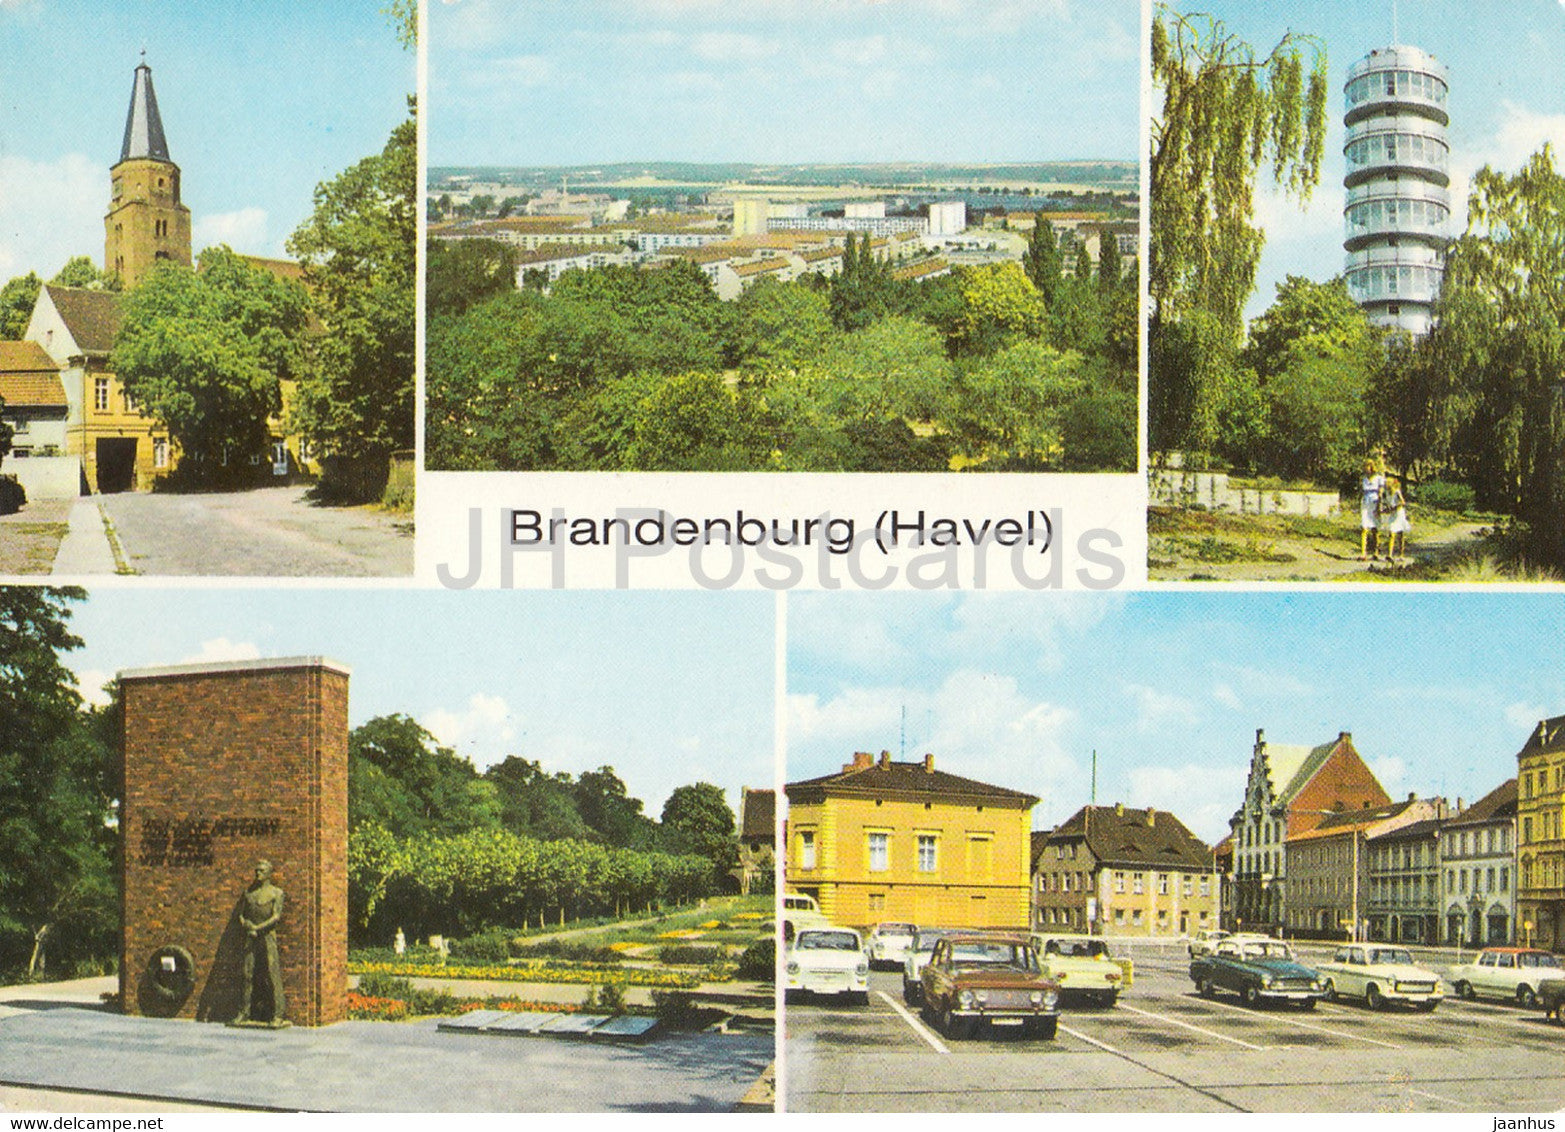 Branderburg - Havel - Dom St Peter und Paul - Friedenswarte - Markt - car Zhiguli - Germany DDR - unused - JH Postcards